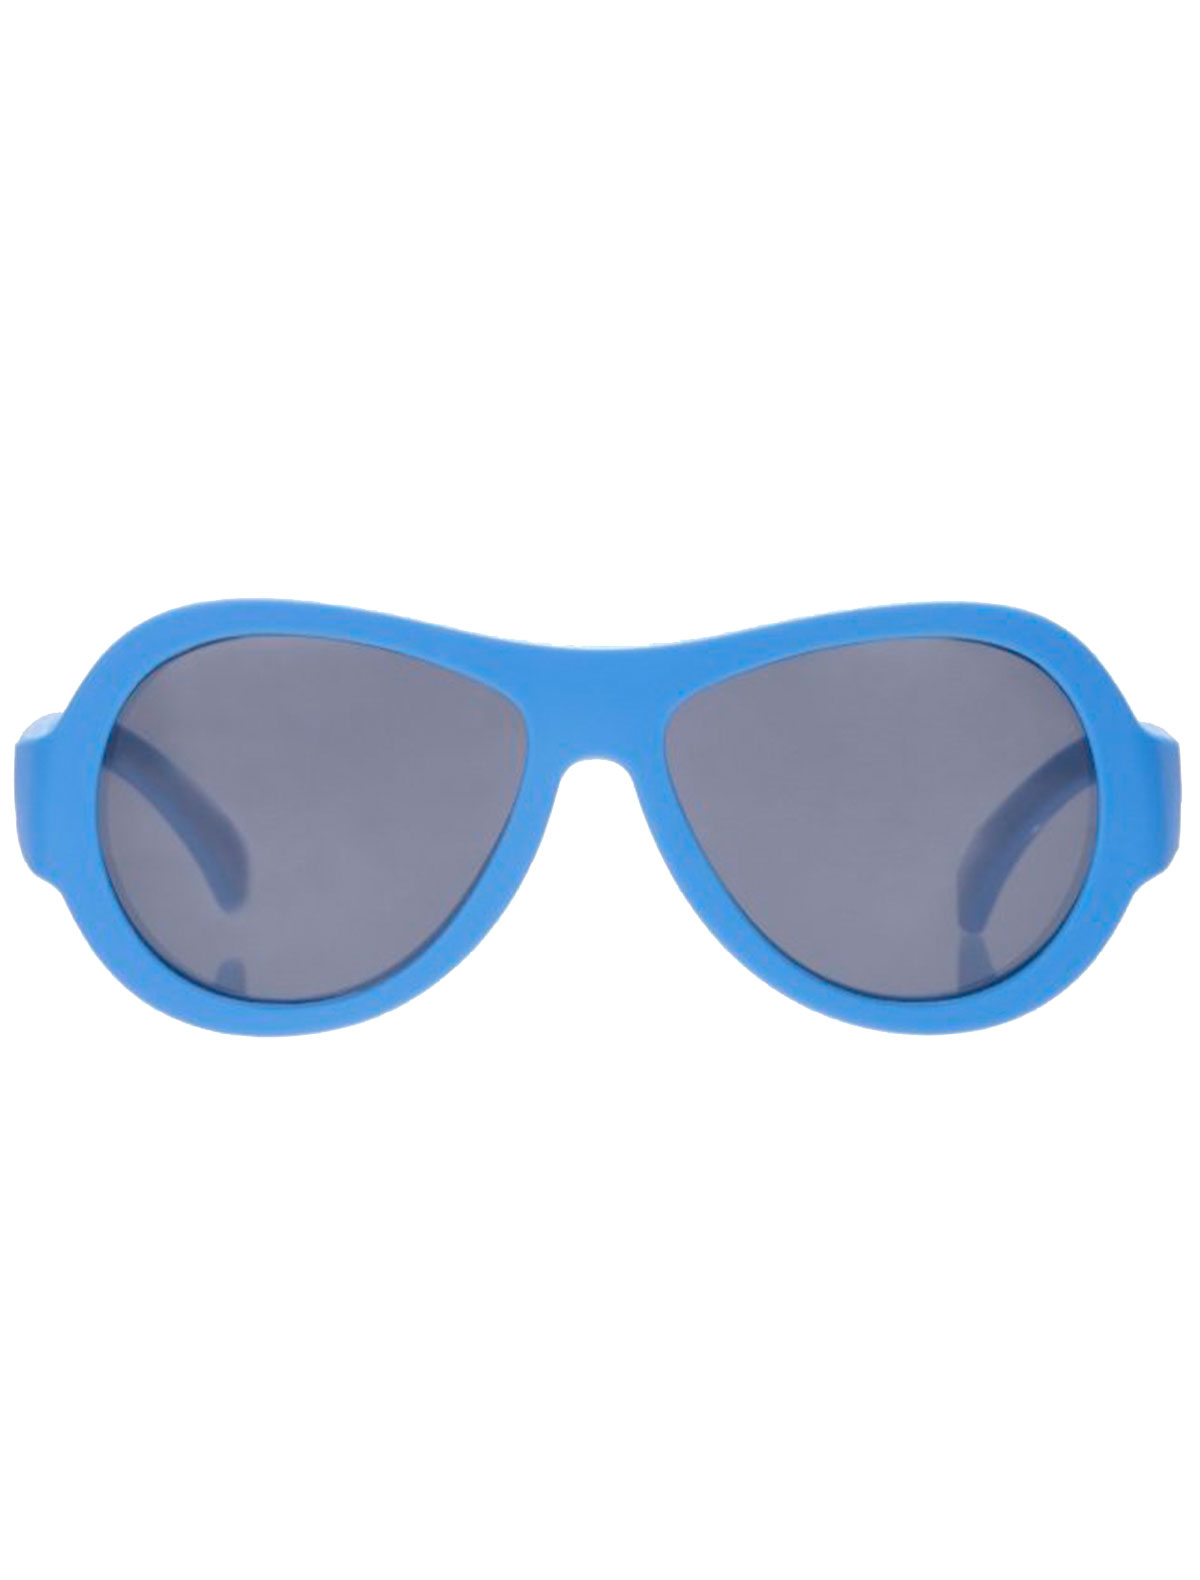 солнцезащитные очки babiators малыши, синие